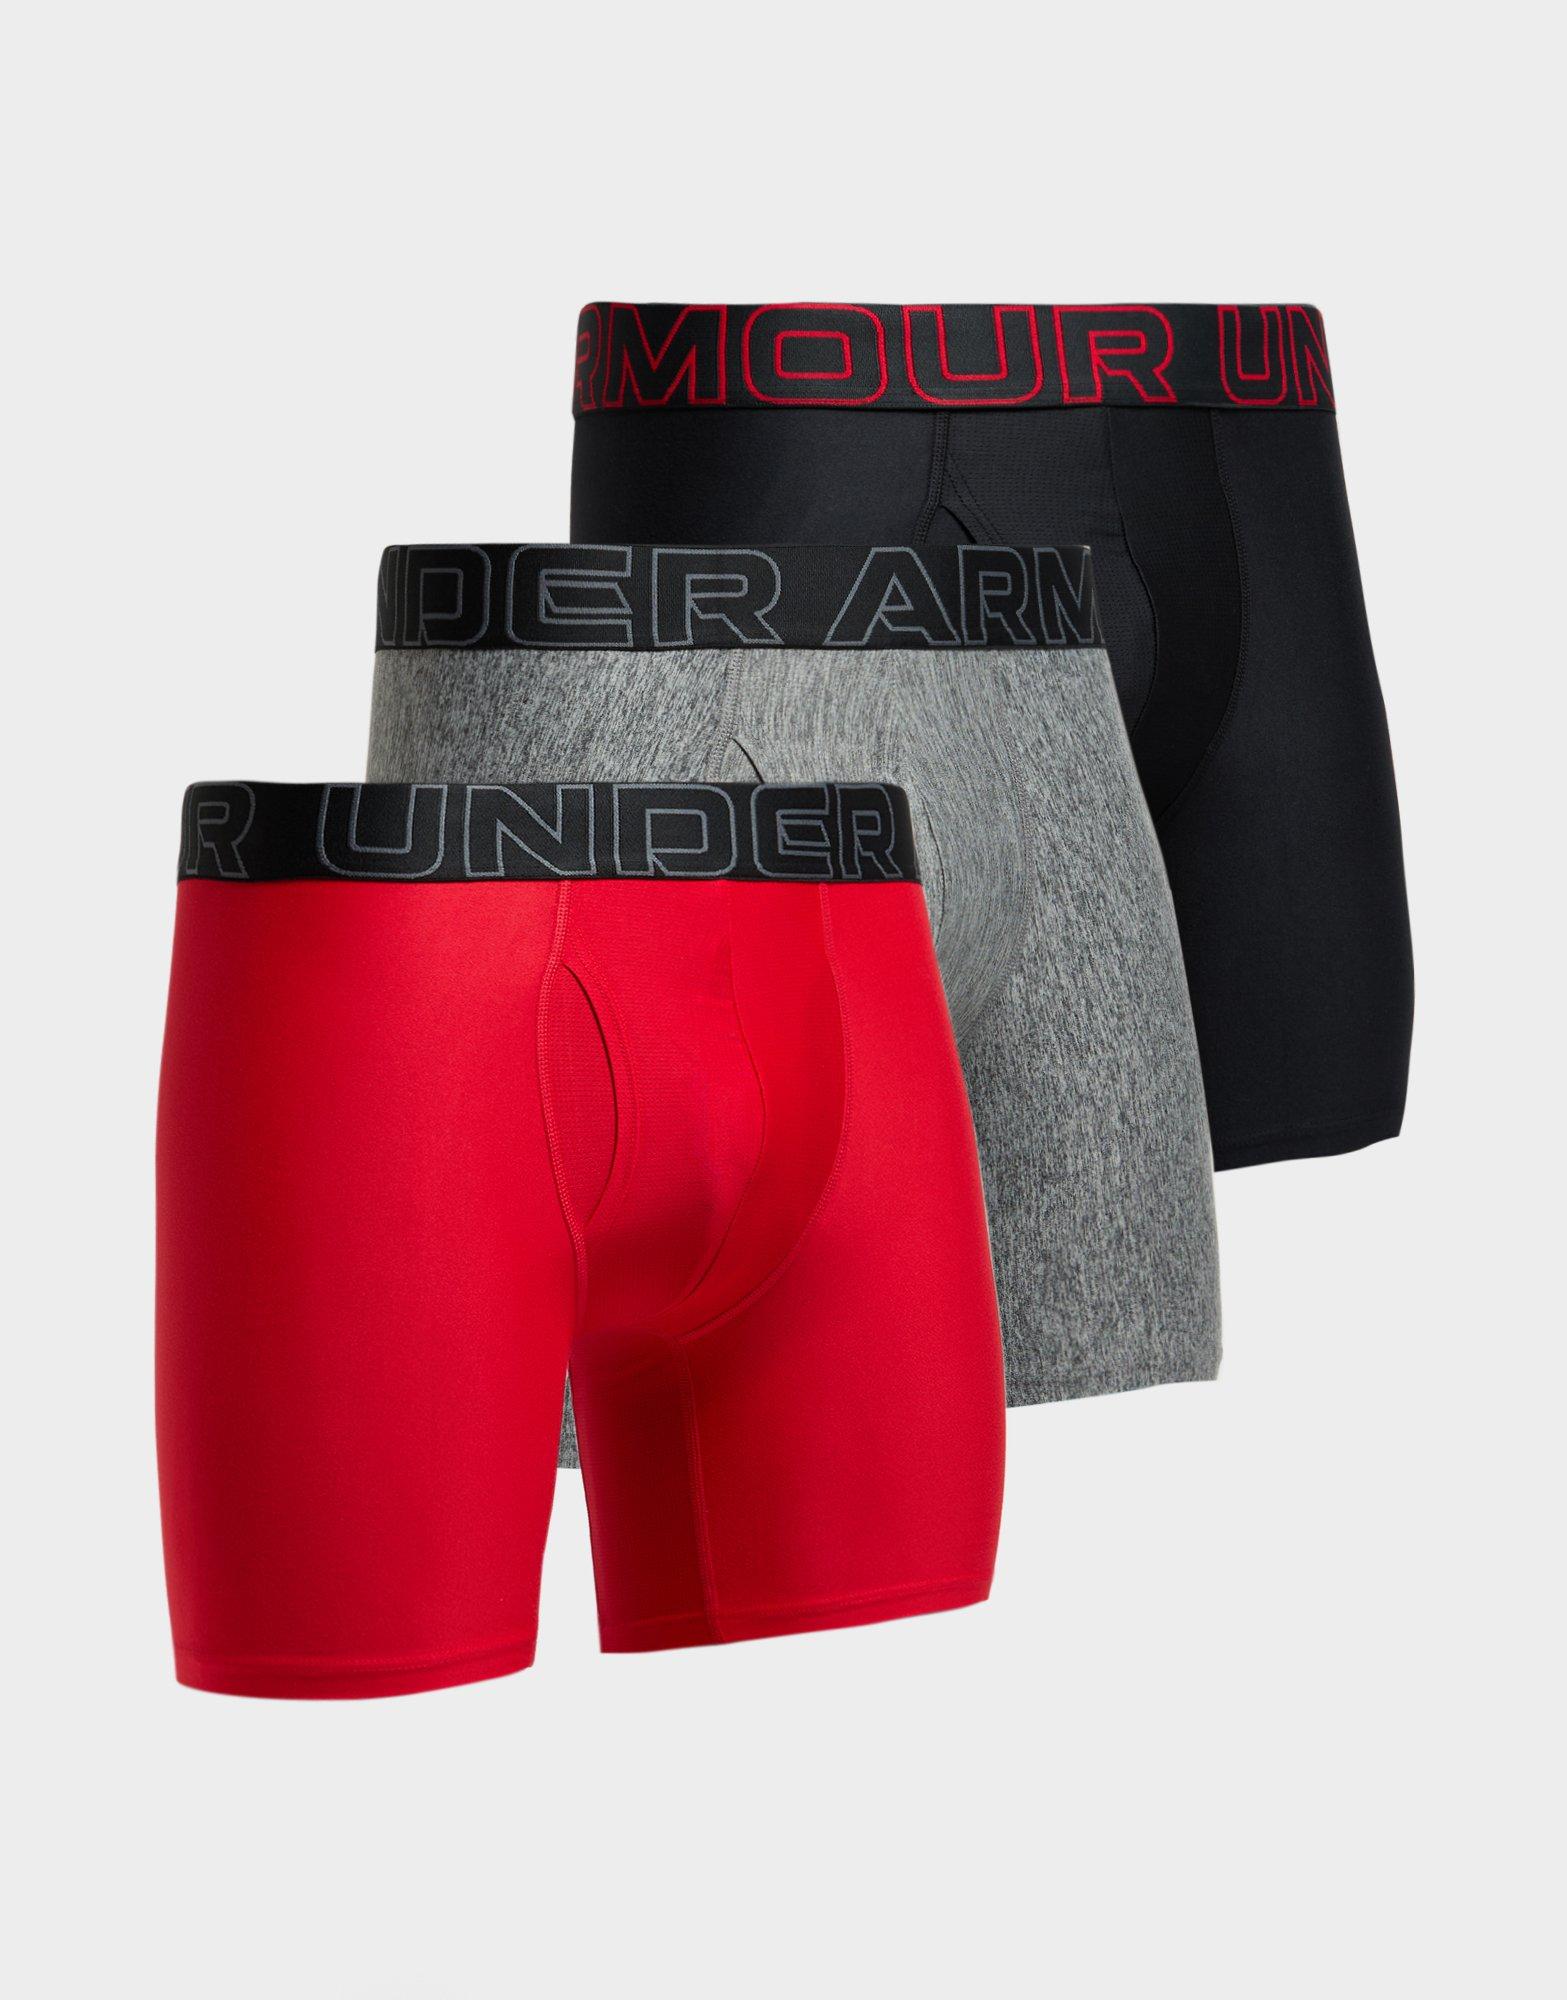 $46 Under Armour Underwear Kid's Boy's Red Boxerjock Boxer Brief Size Medium